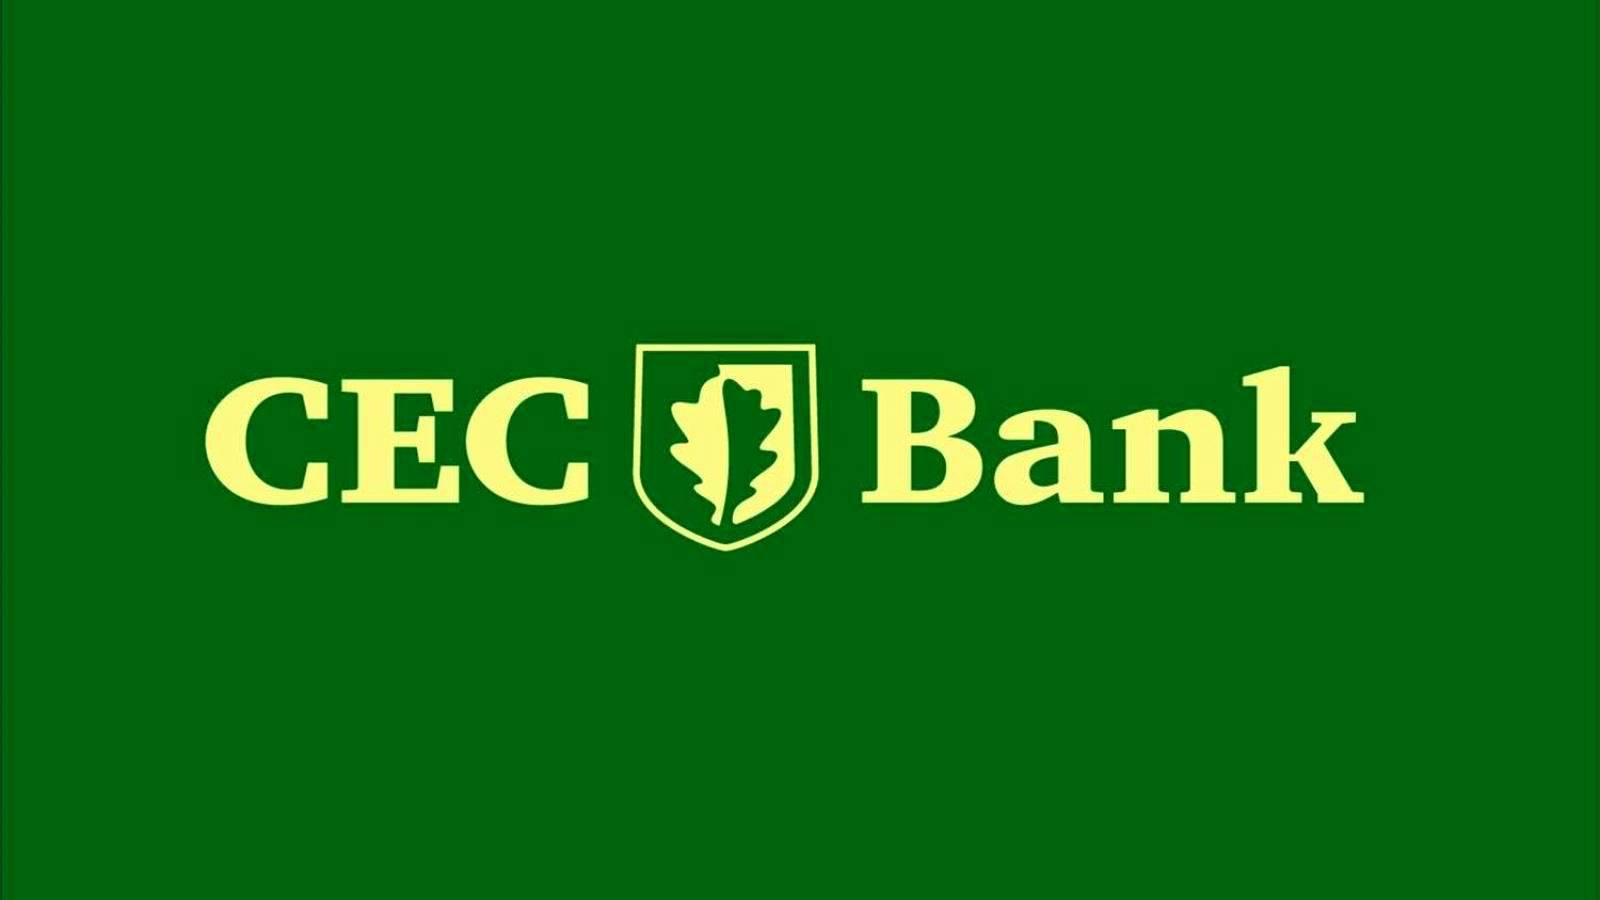 Comunicarea CEC Bank cu o Decizie Adusa in Imediata Atenție a Clienților